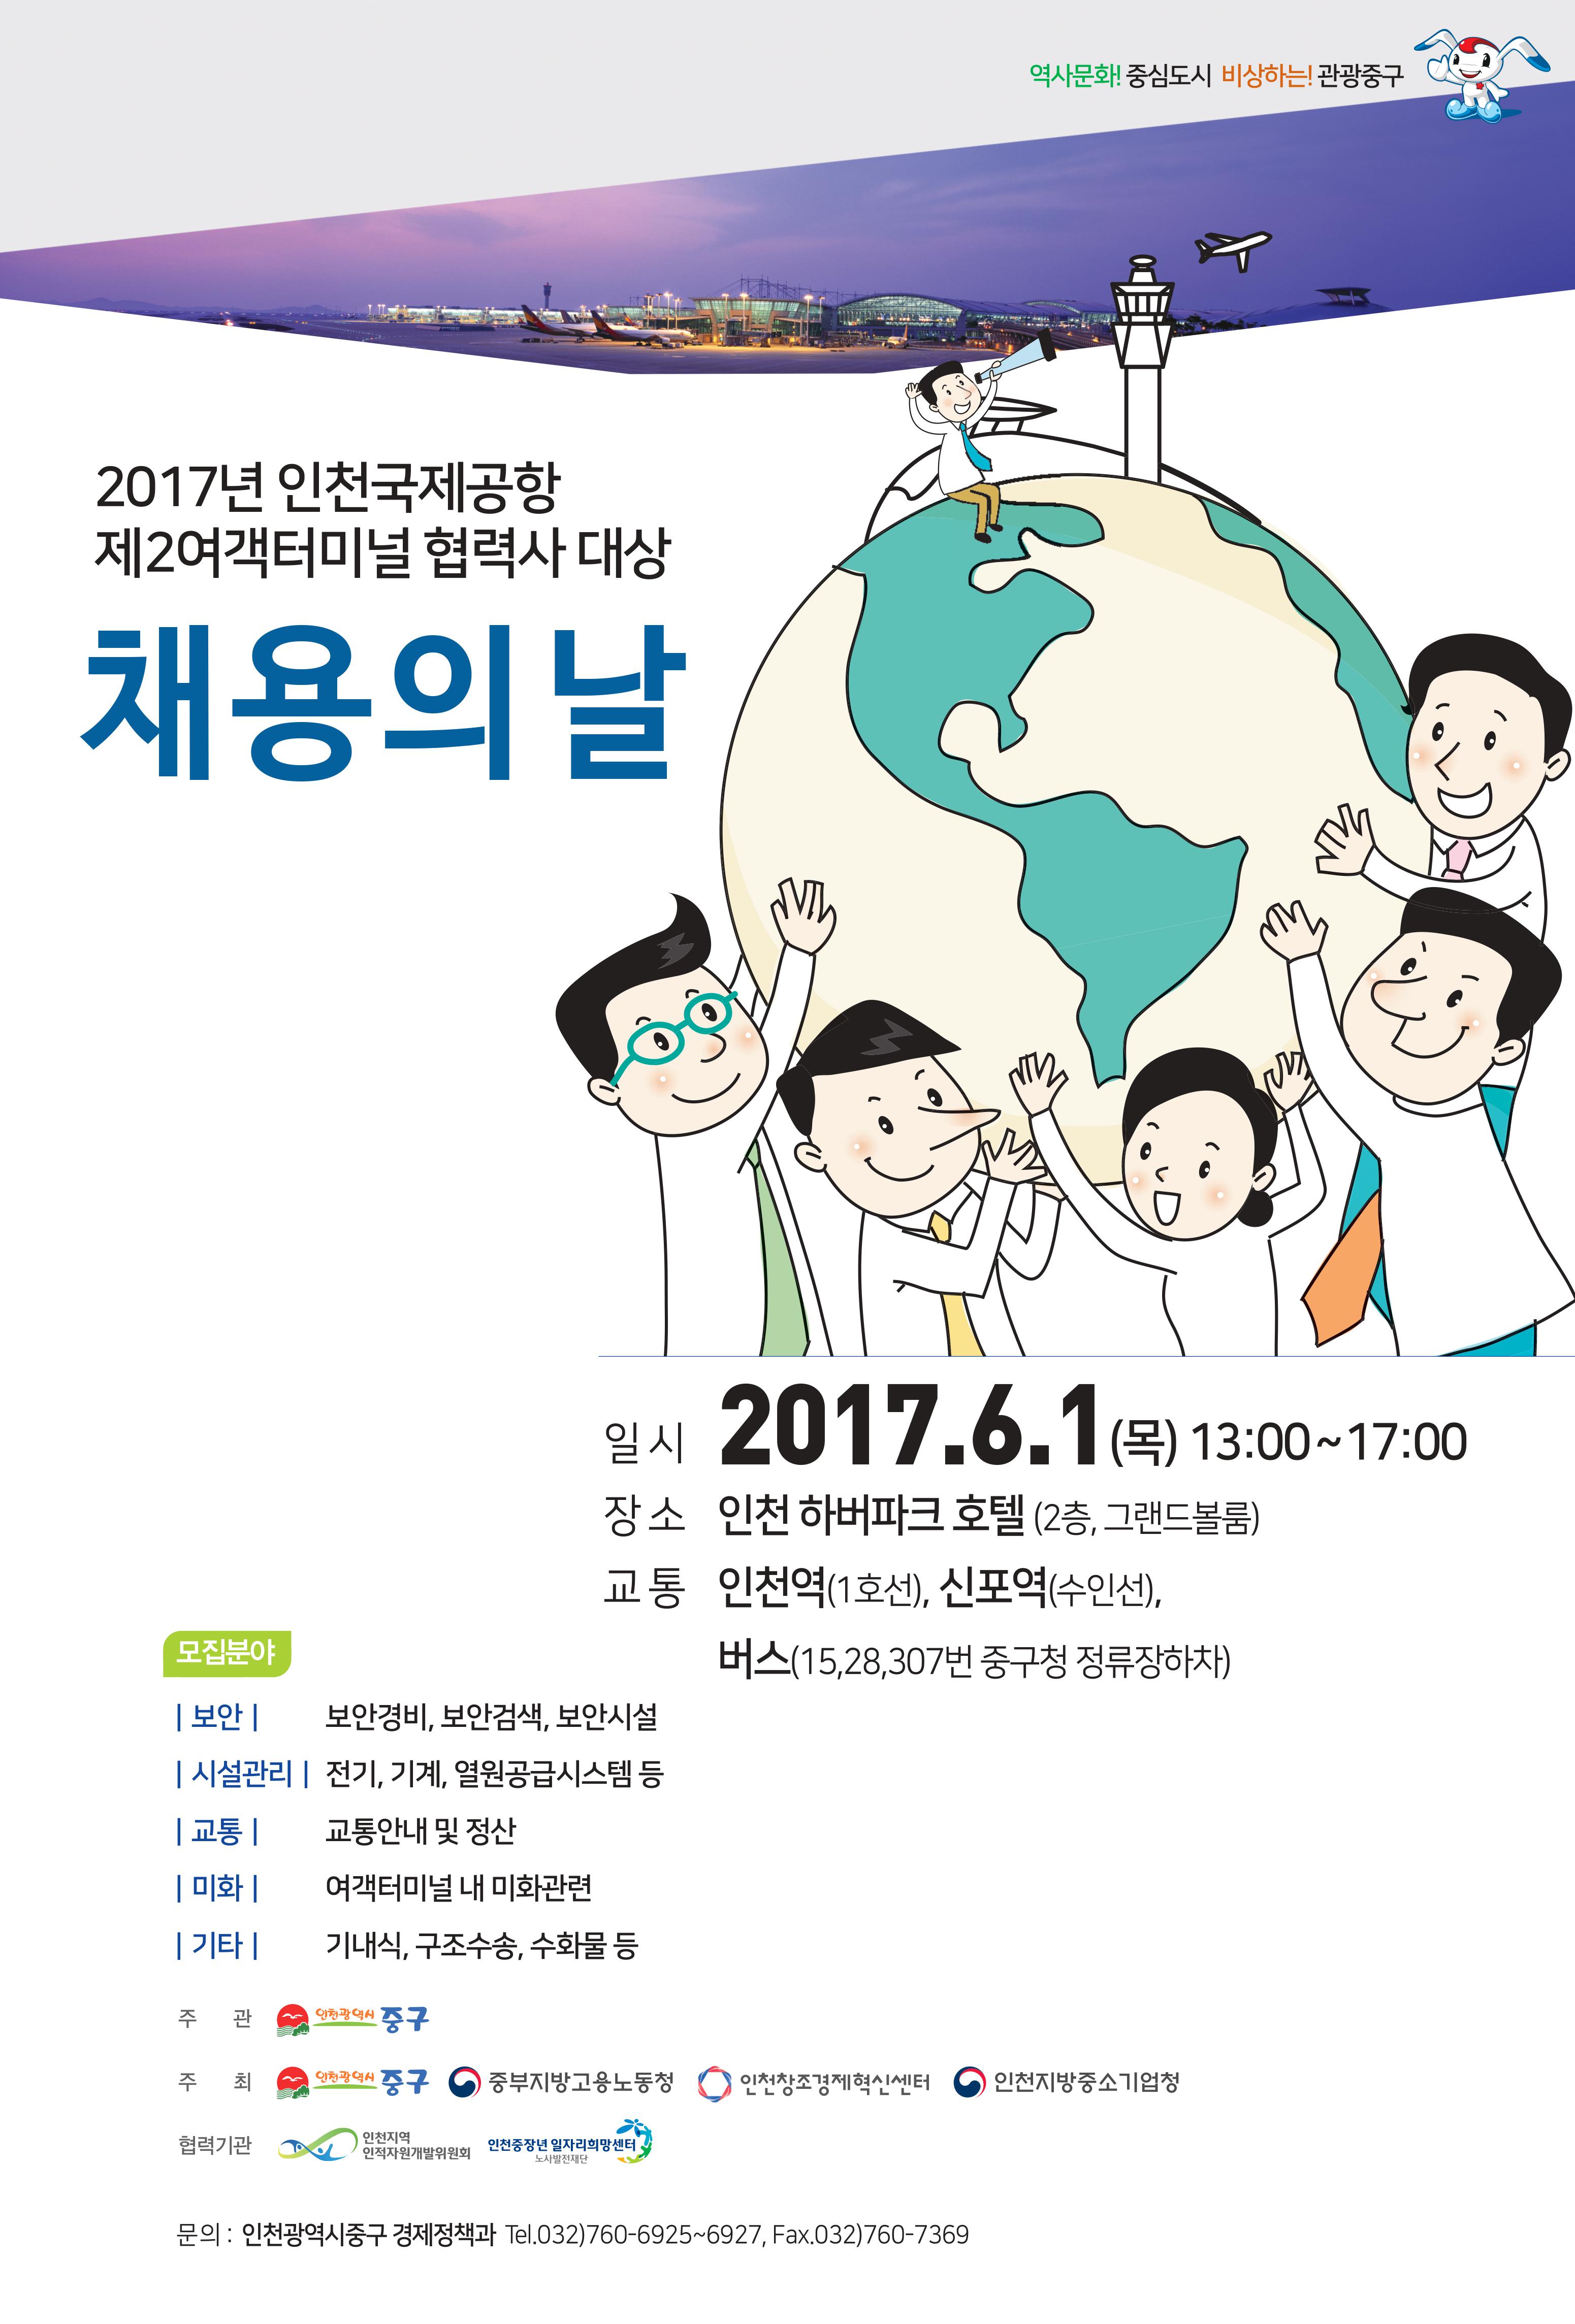 2017년 인천국제공항 제2여객터미널 협력사 대상 채용의 날